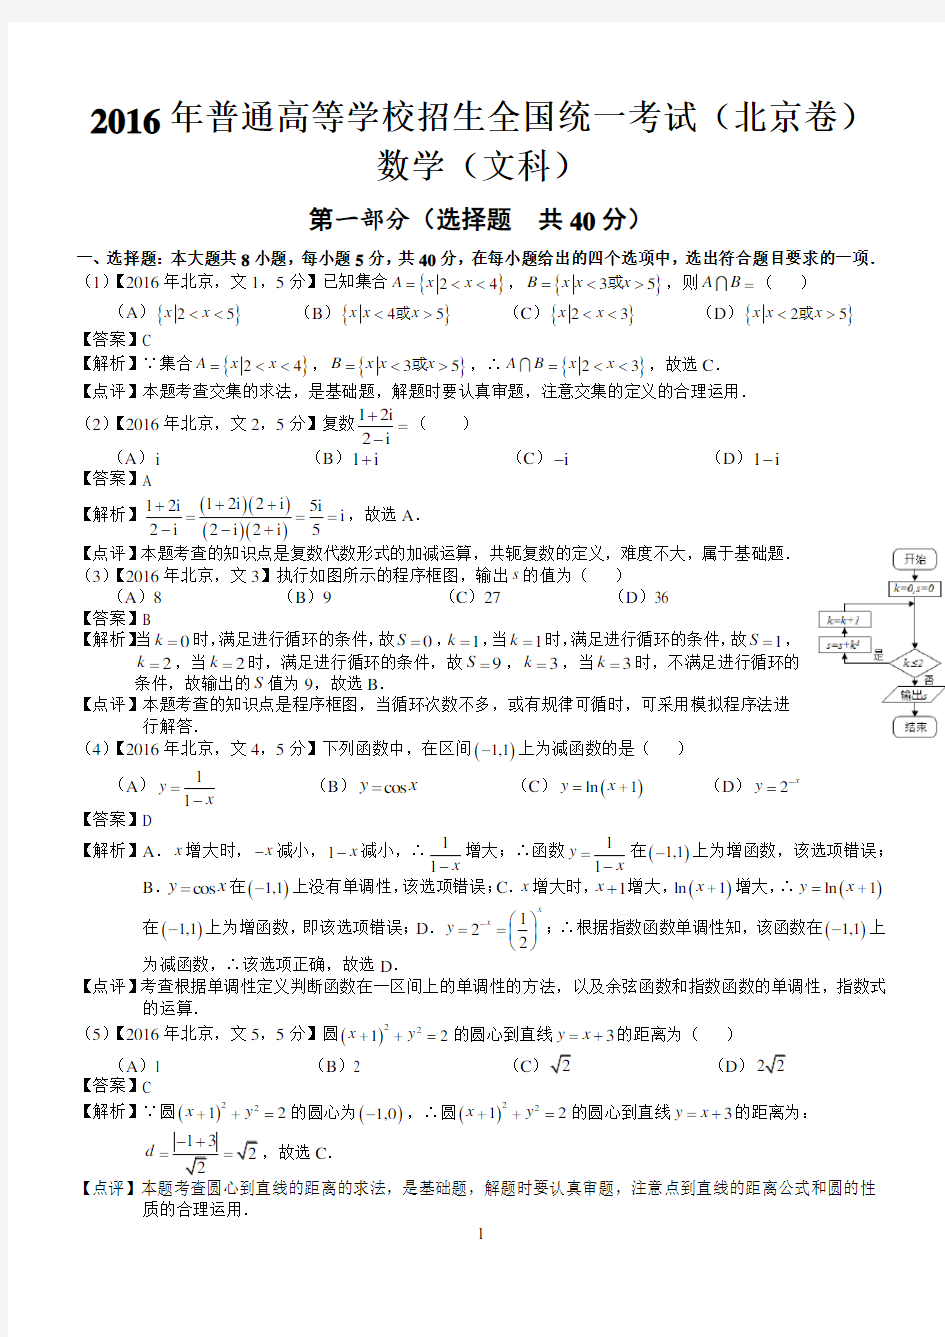 2016年高考北京文科数学试题及答案(word解析版)